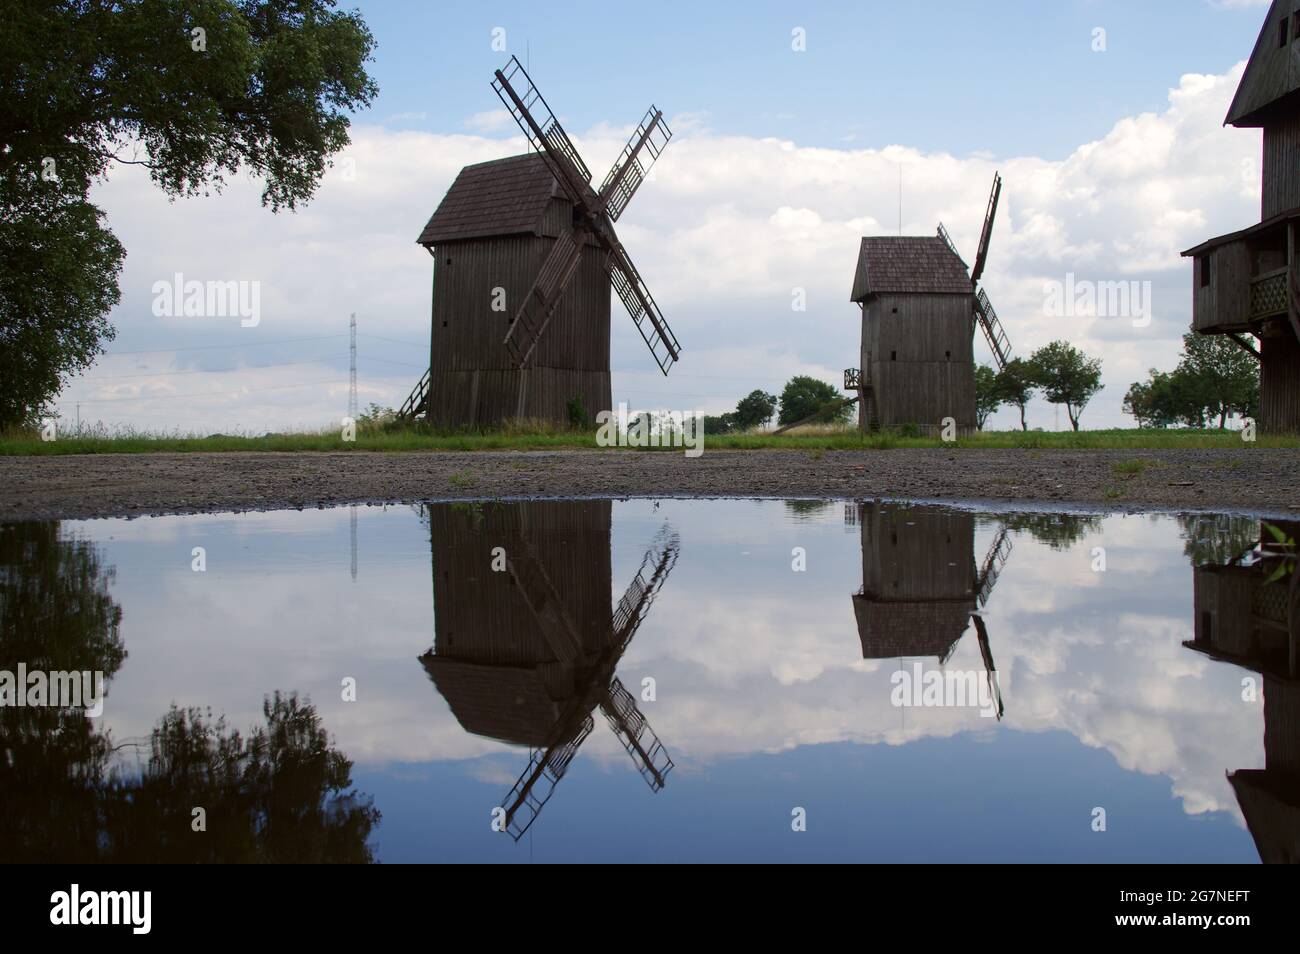 Alte Windmühle. Historische Landwirtschaftstechnologie. Alte Windmühle. Stockfoto